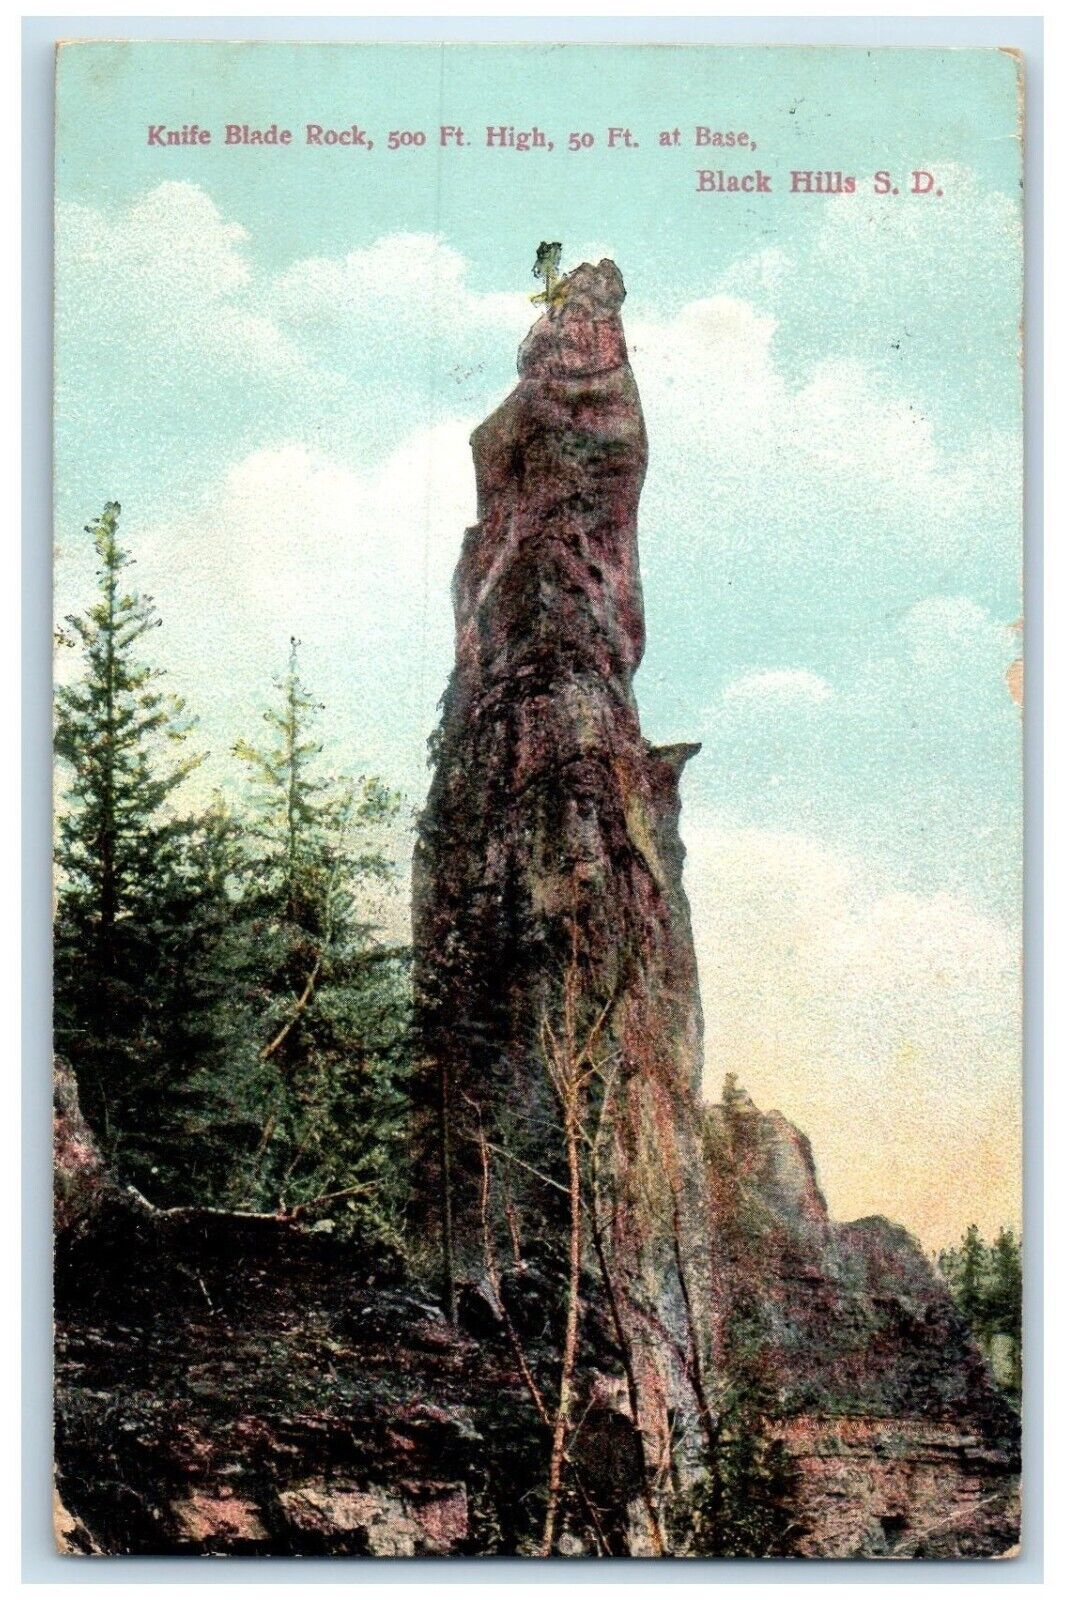 1911 Knife Blade Rock Ft. High Black Hills South Dakota Vintage Antique Postcard